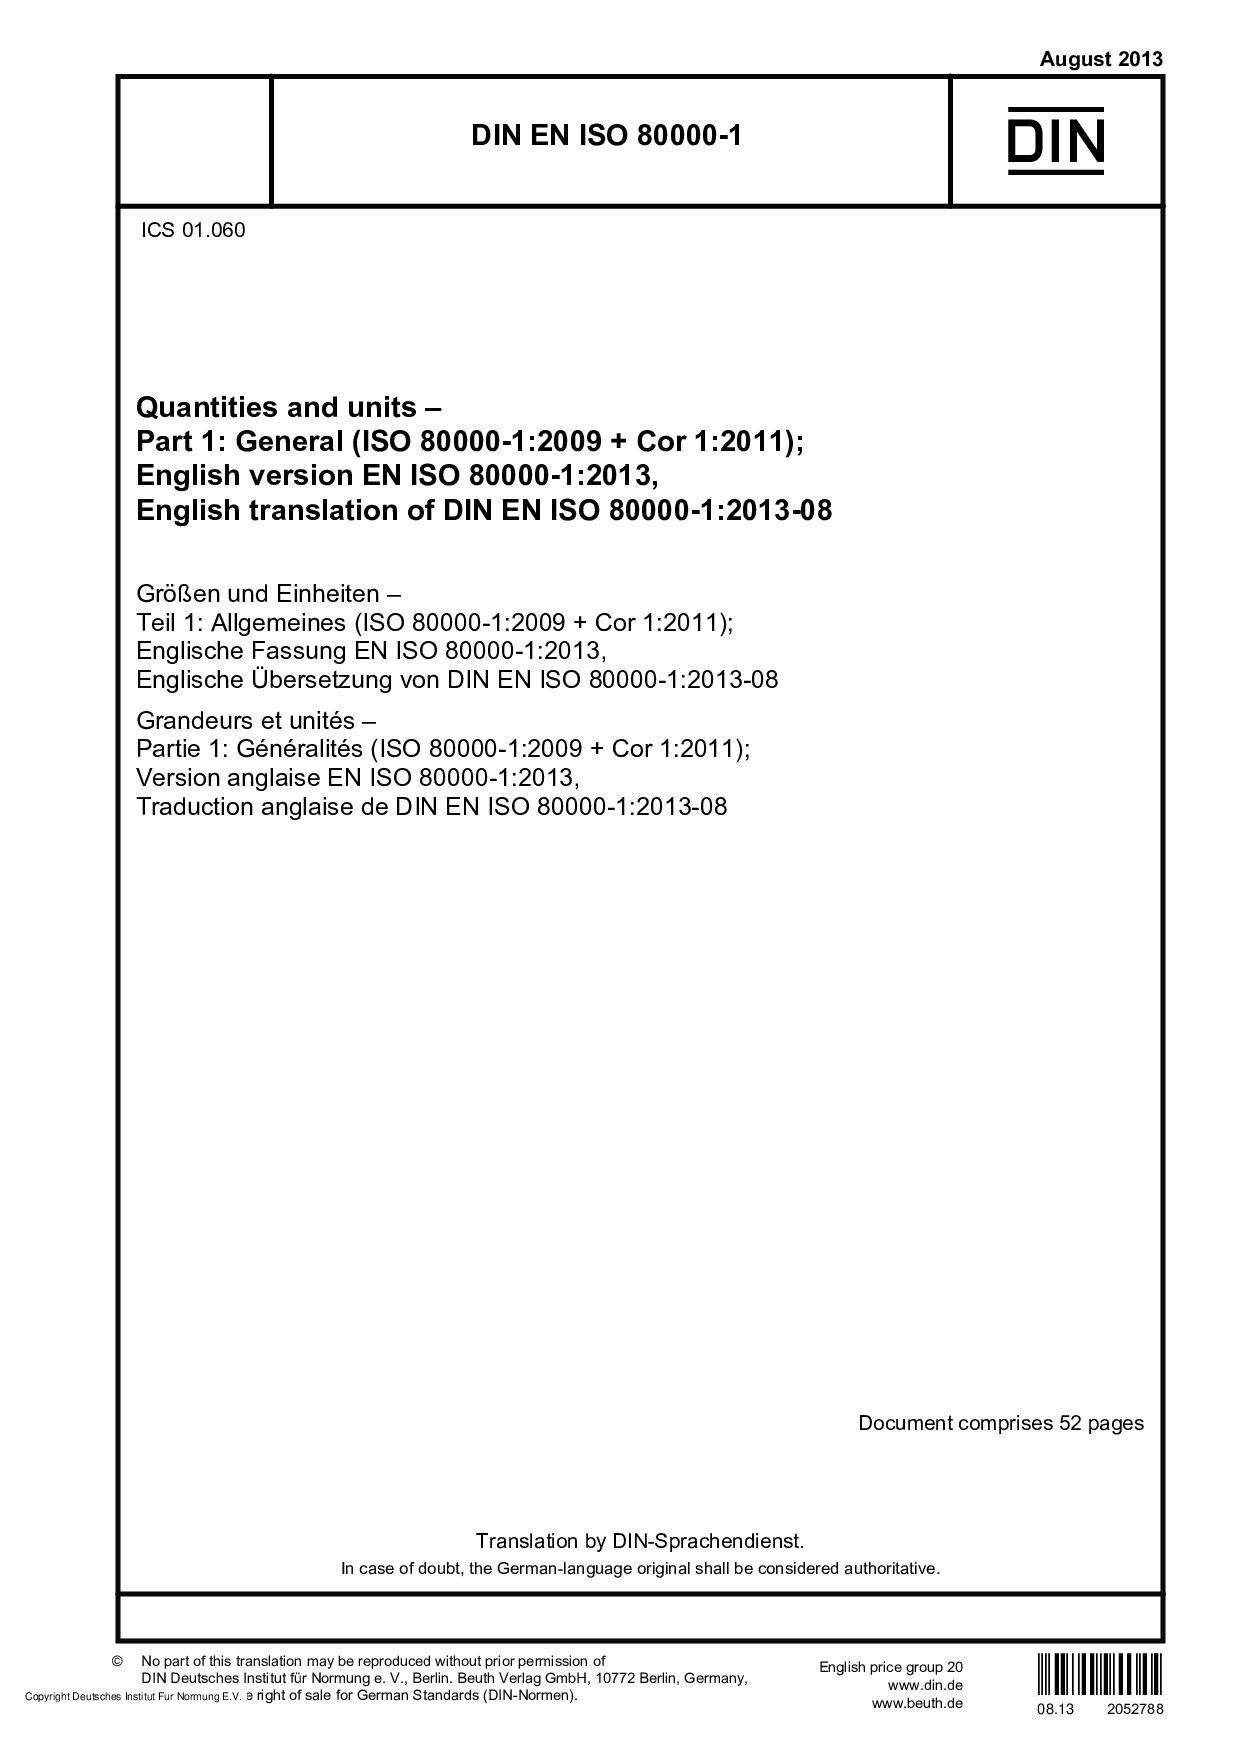 DIN EN ISO 80000-1:2013-08